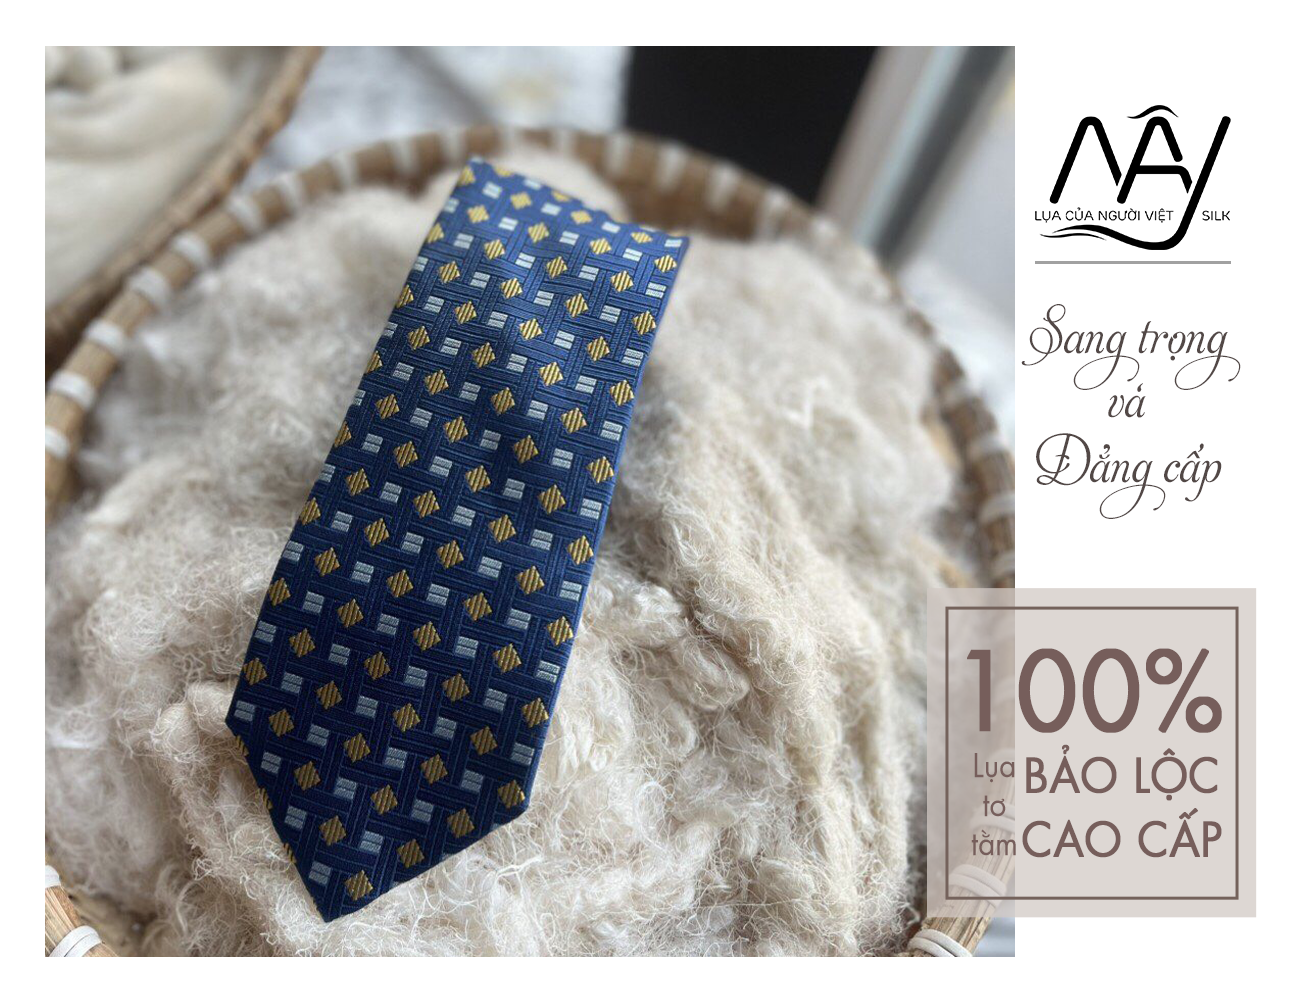 blue silk tie